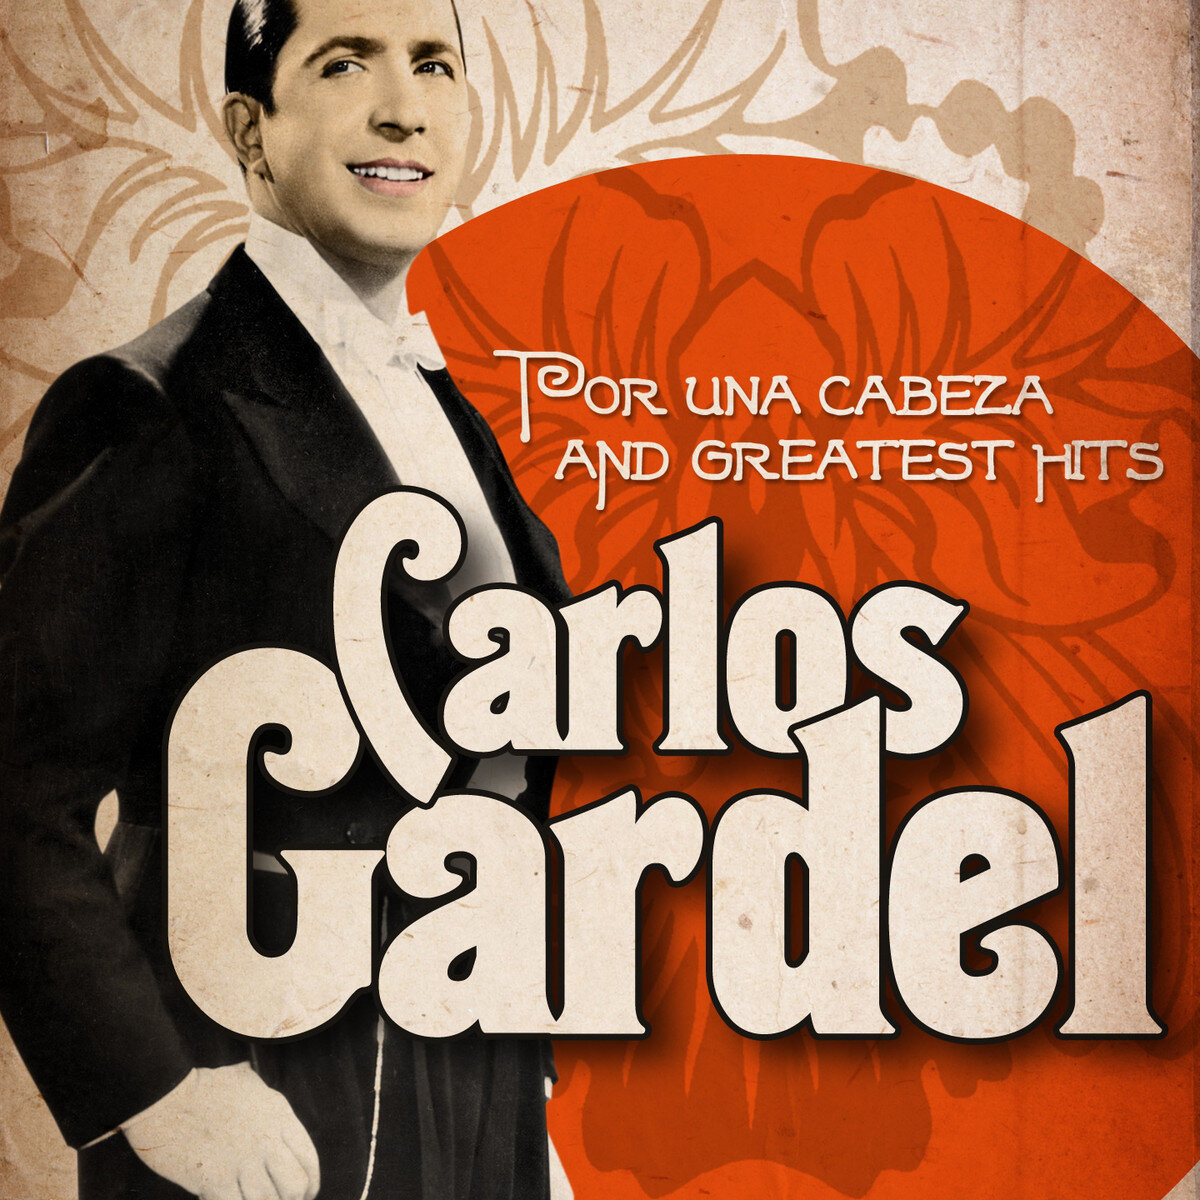  «Por una cabeza» - знаменитое танго, написанное в 1935 году легендарным Карлосом Гарделем в соавторстве с Альфредо ле Фера.